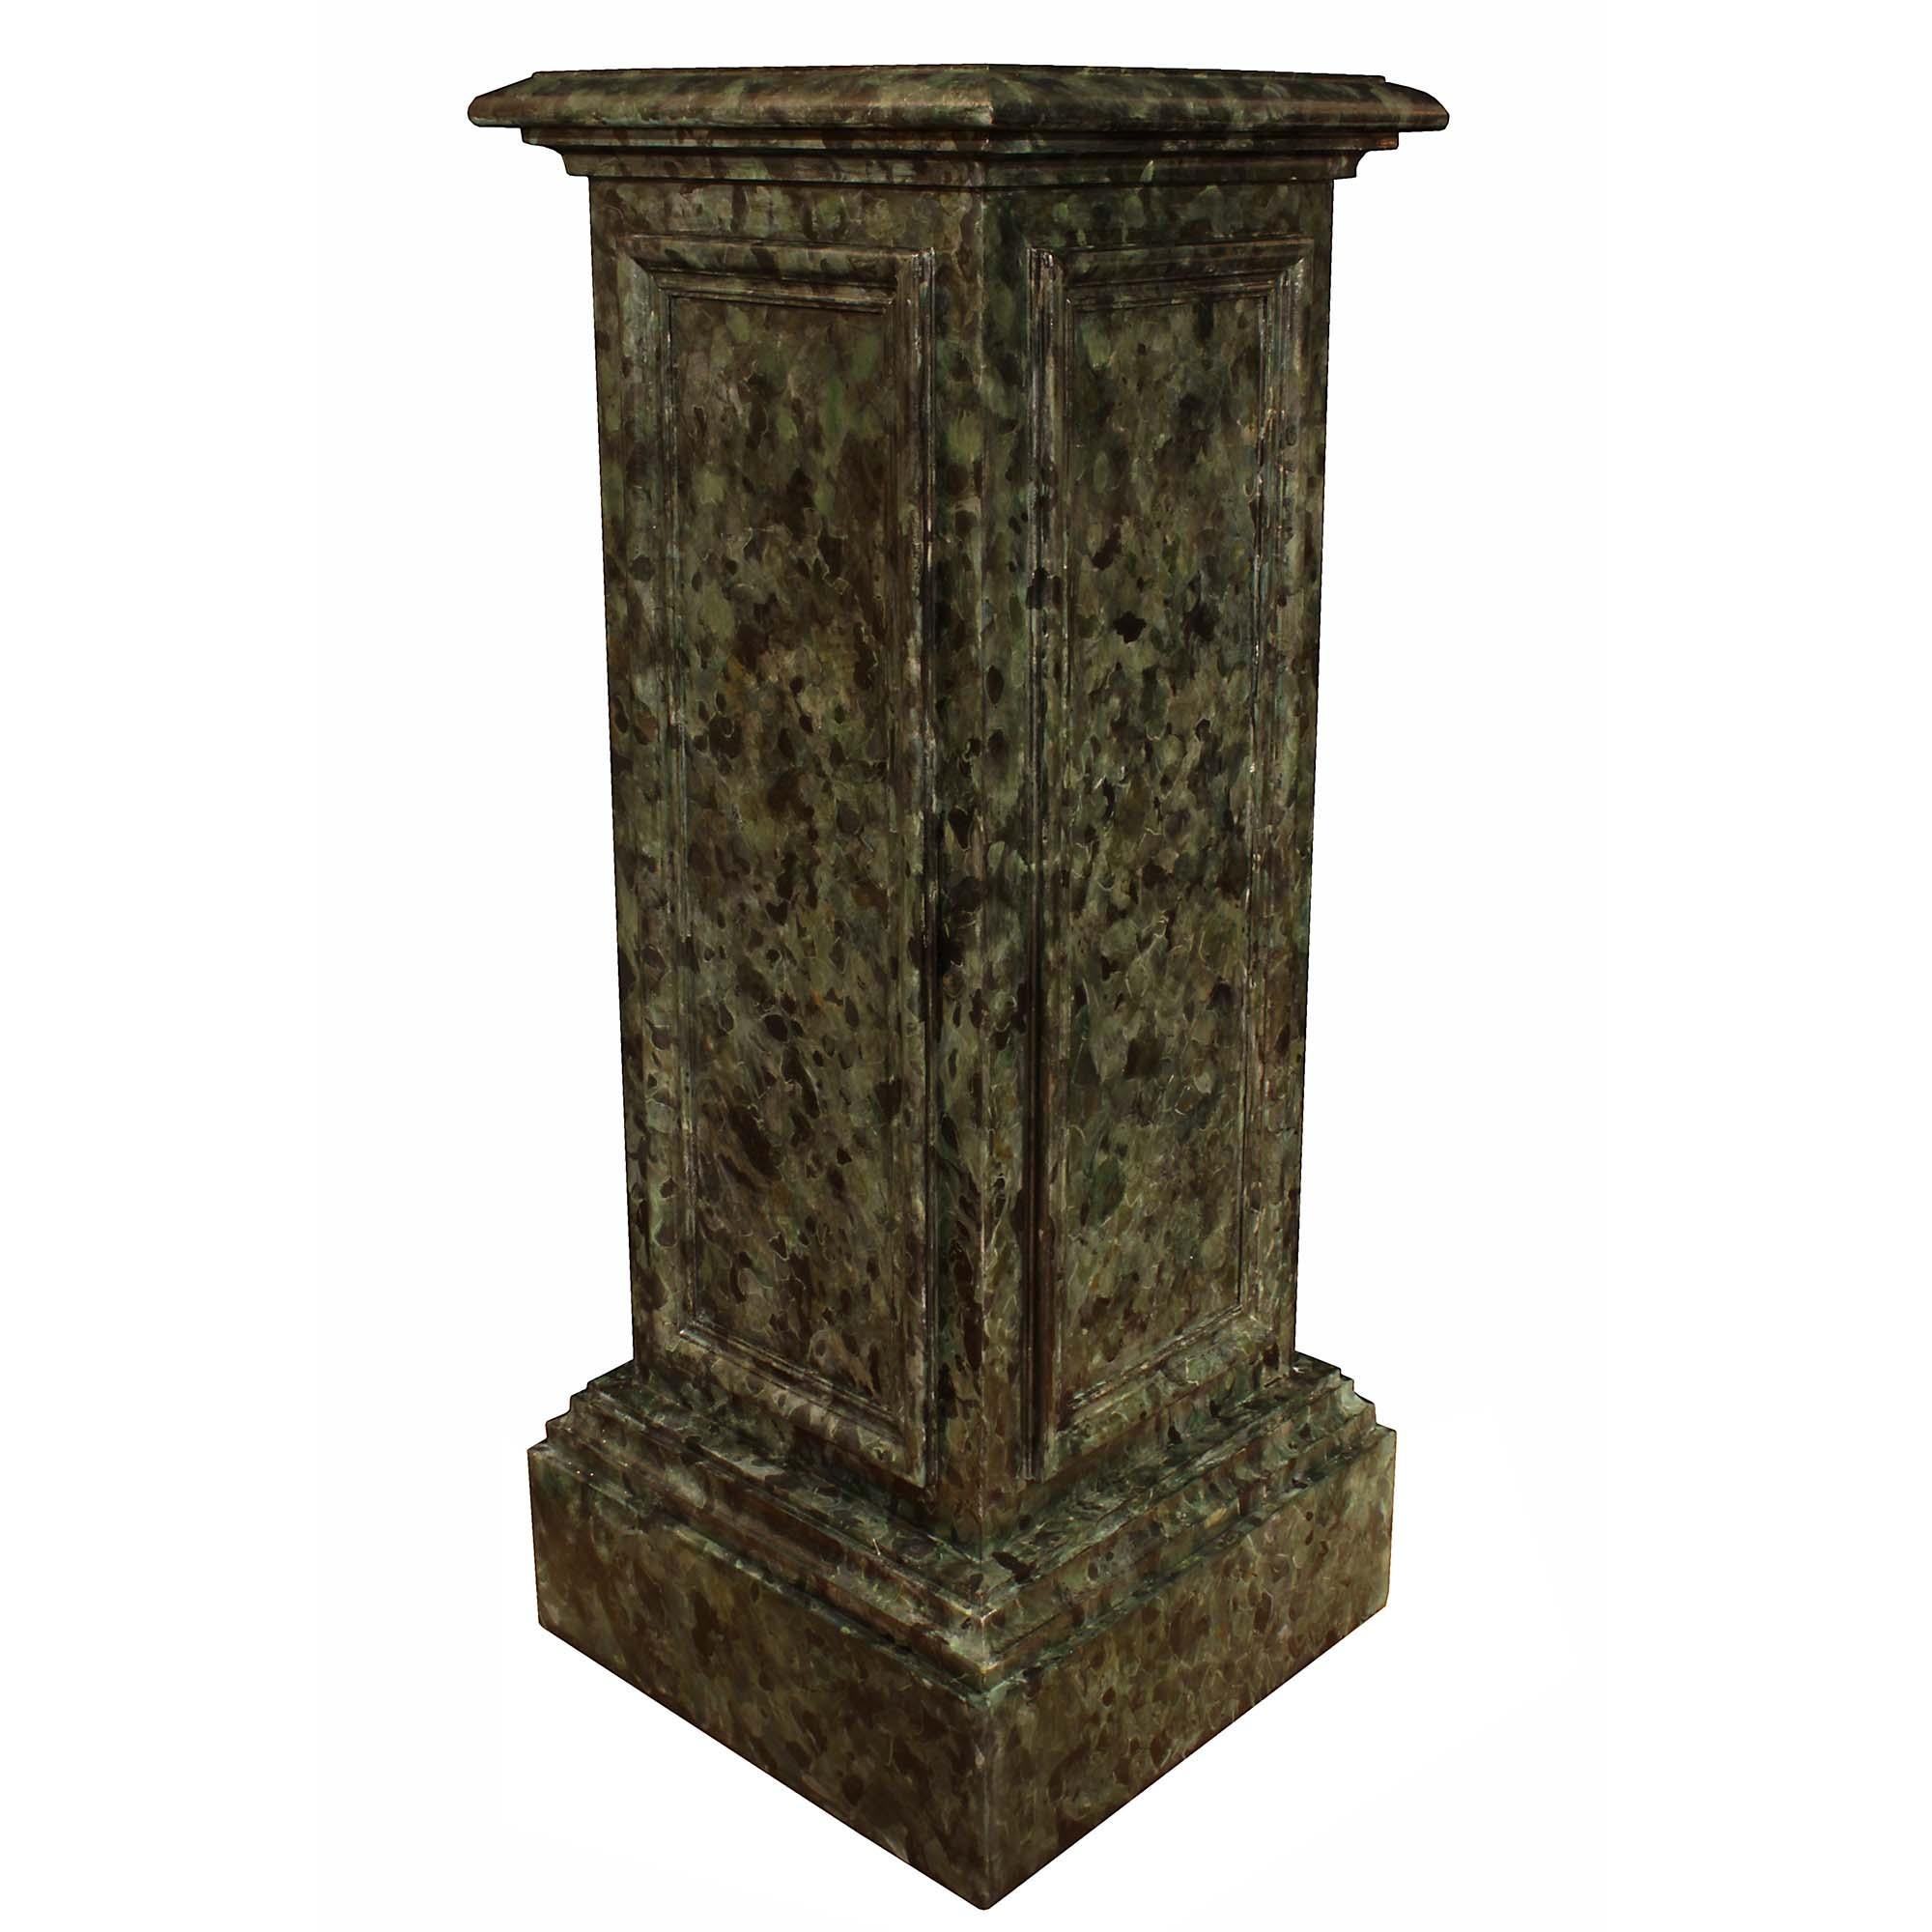 Une paire étonnante de colonnes classiques italiennes du 19ème siècle. Chaque colonne peinte en faux marbre est élevée sur une base carrée mouchetée. Le corps central est doté de beaux panneaux en retrait de chaque côté. Le tout sous la plate-forme